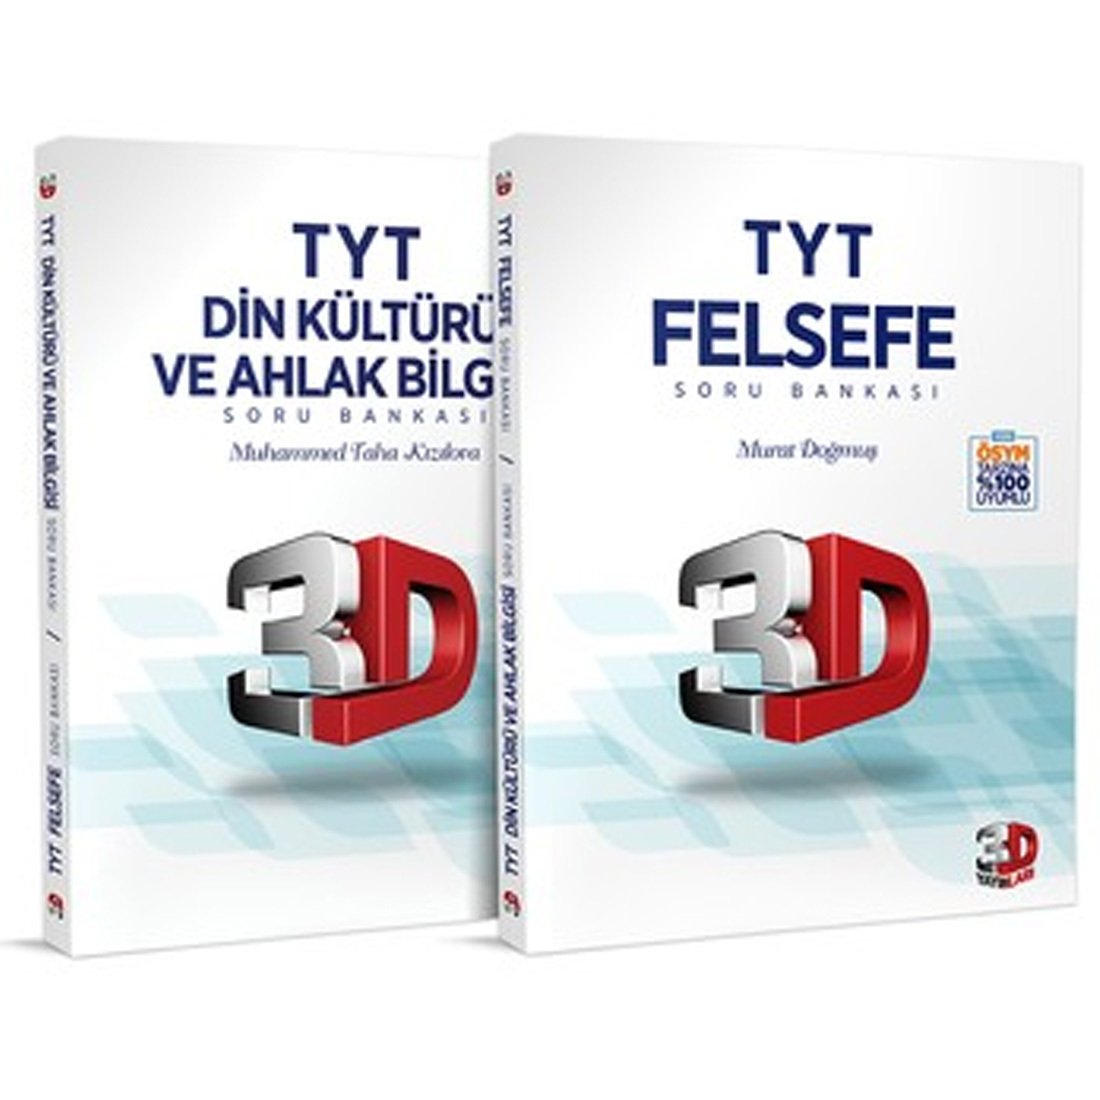 TYT İki Yüzlü Din Kültürü Ve Ahlak Bilgisi Ve Felsefe Soru Bankası- 3D Yayınları